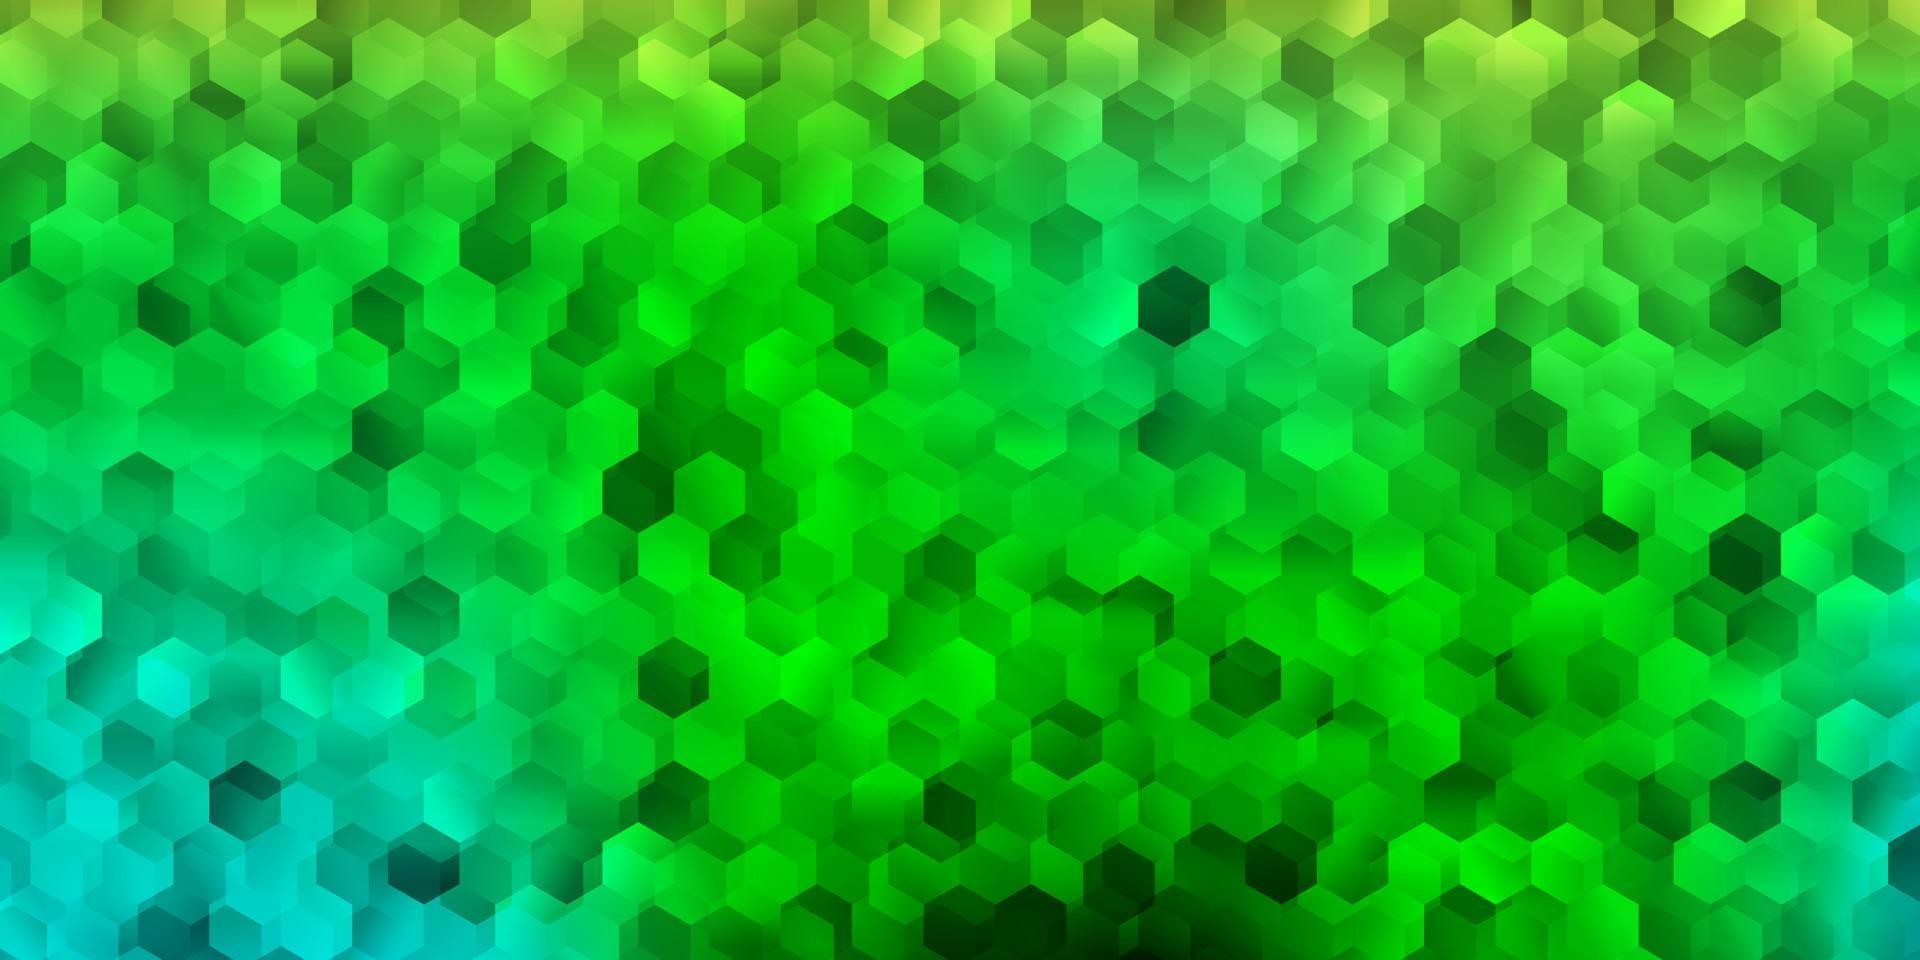 fond de vecteur bleu clair et vert avec des formes hexagonales.